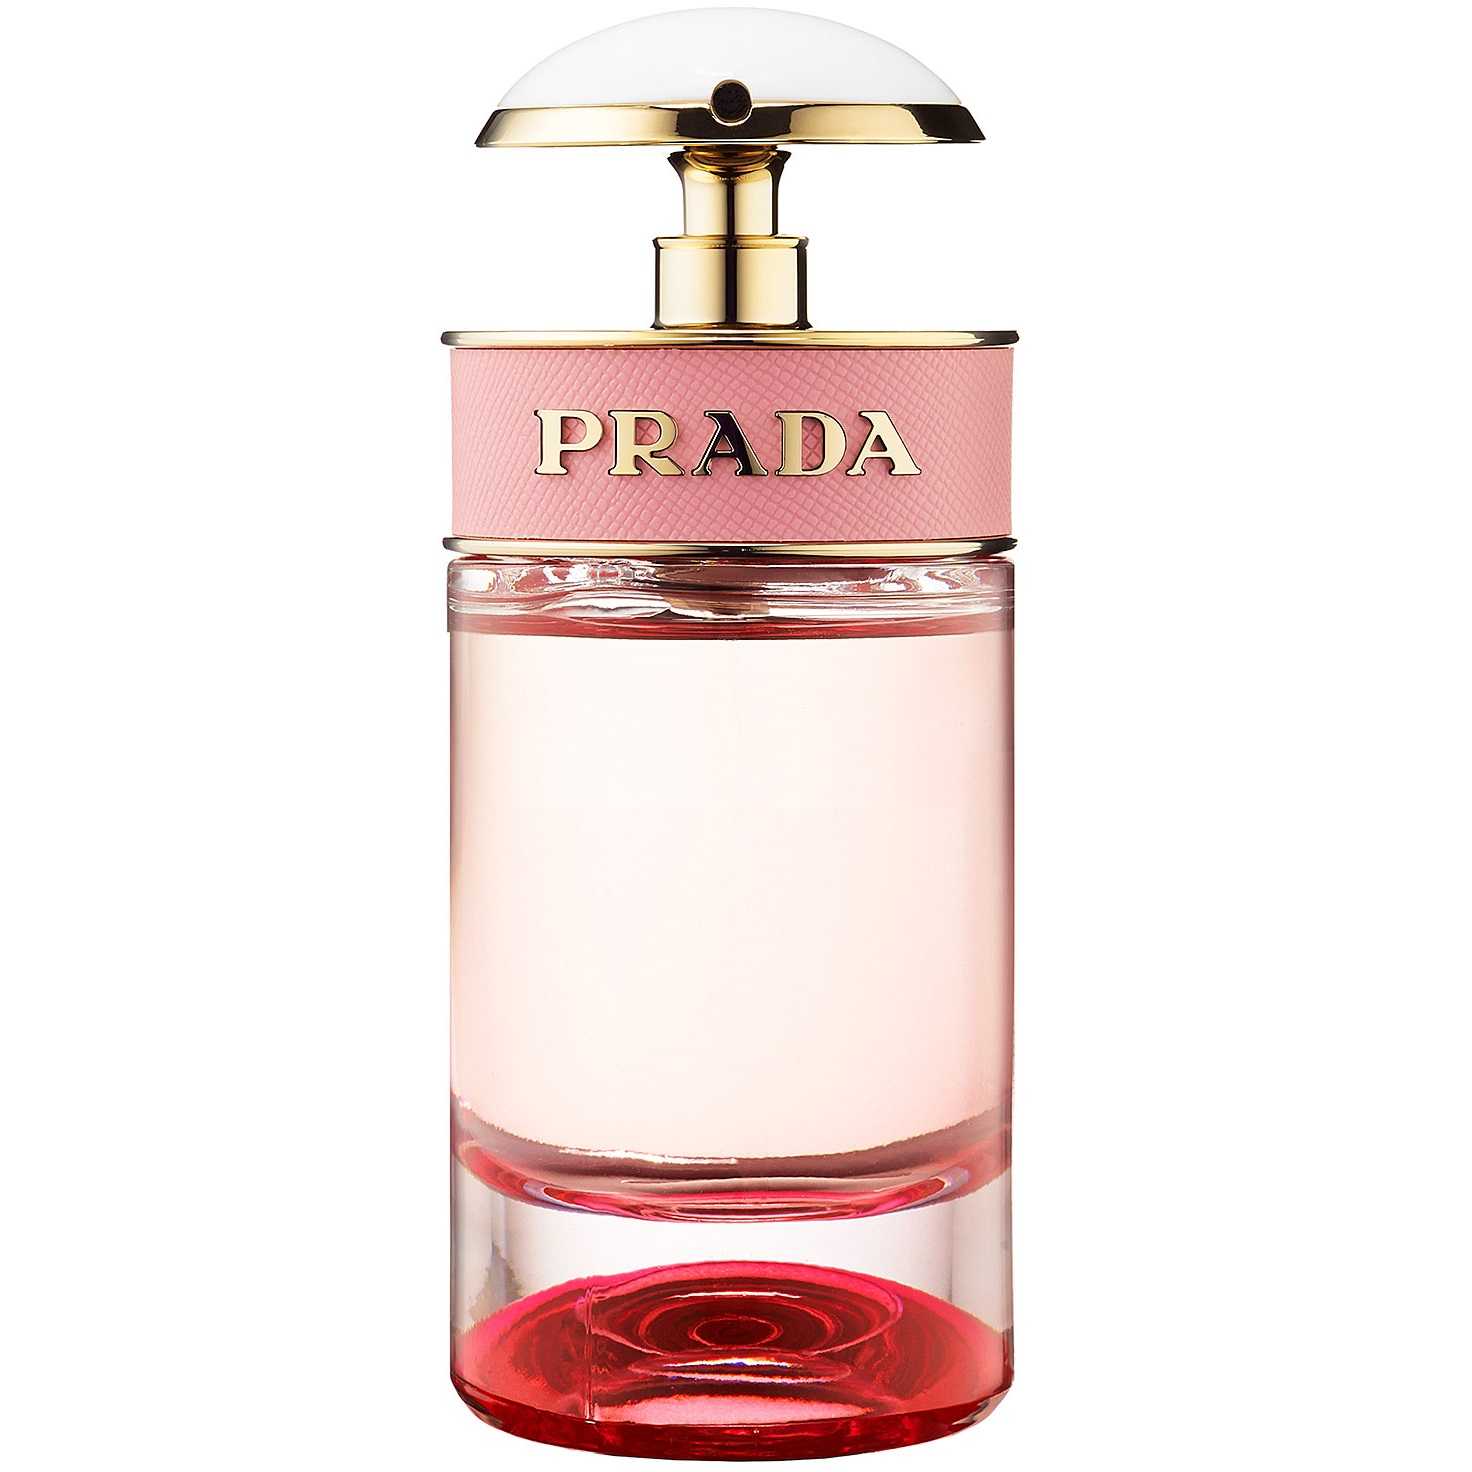 Prada  candy - описание аромата, отзывы и рекомендации по выбору